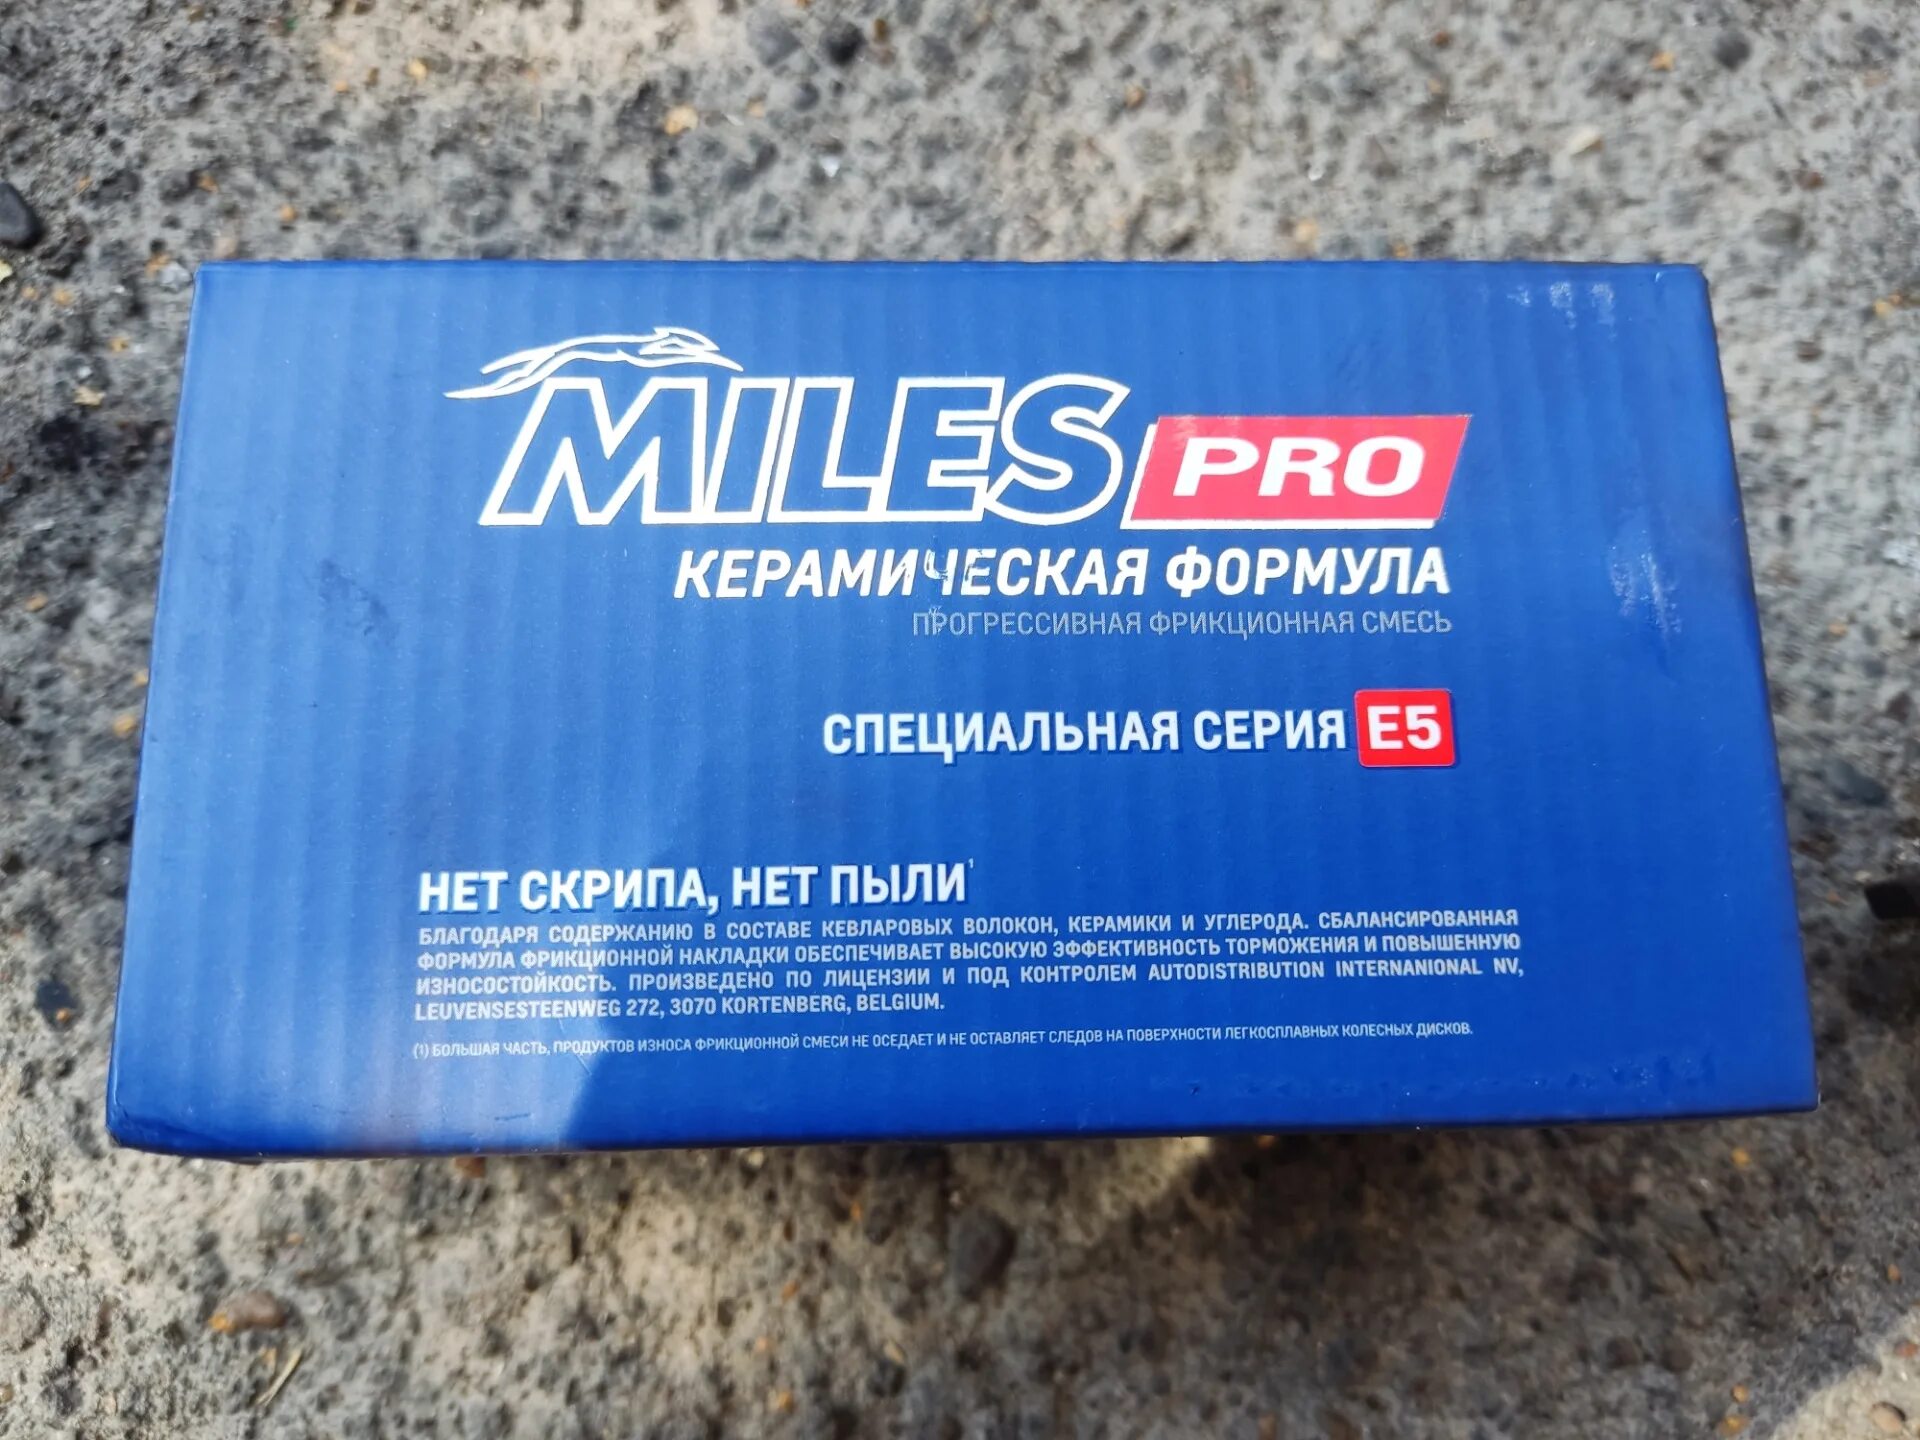 Miles Pro. Колодки тормозные Miles Pro Ceramic. Pro Miles синие. Miles Pro Ceramic Formula на Ауди а6. Производитель miles отзывы